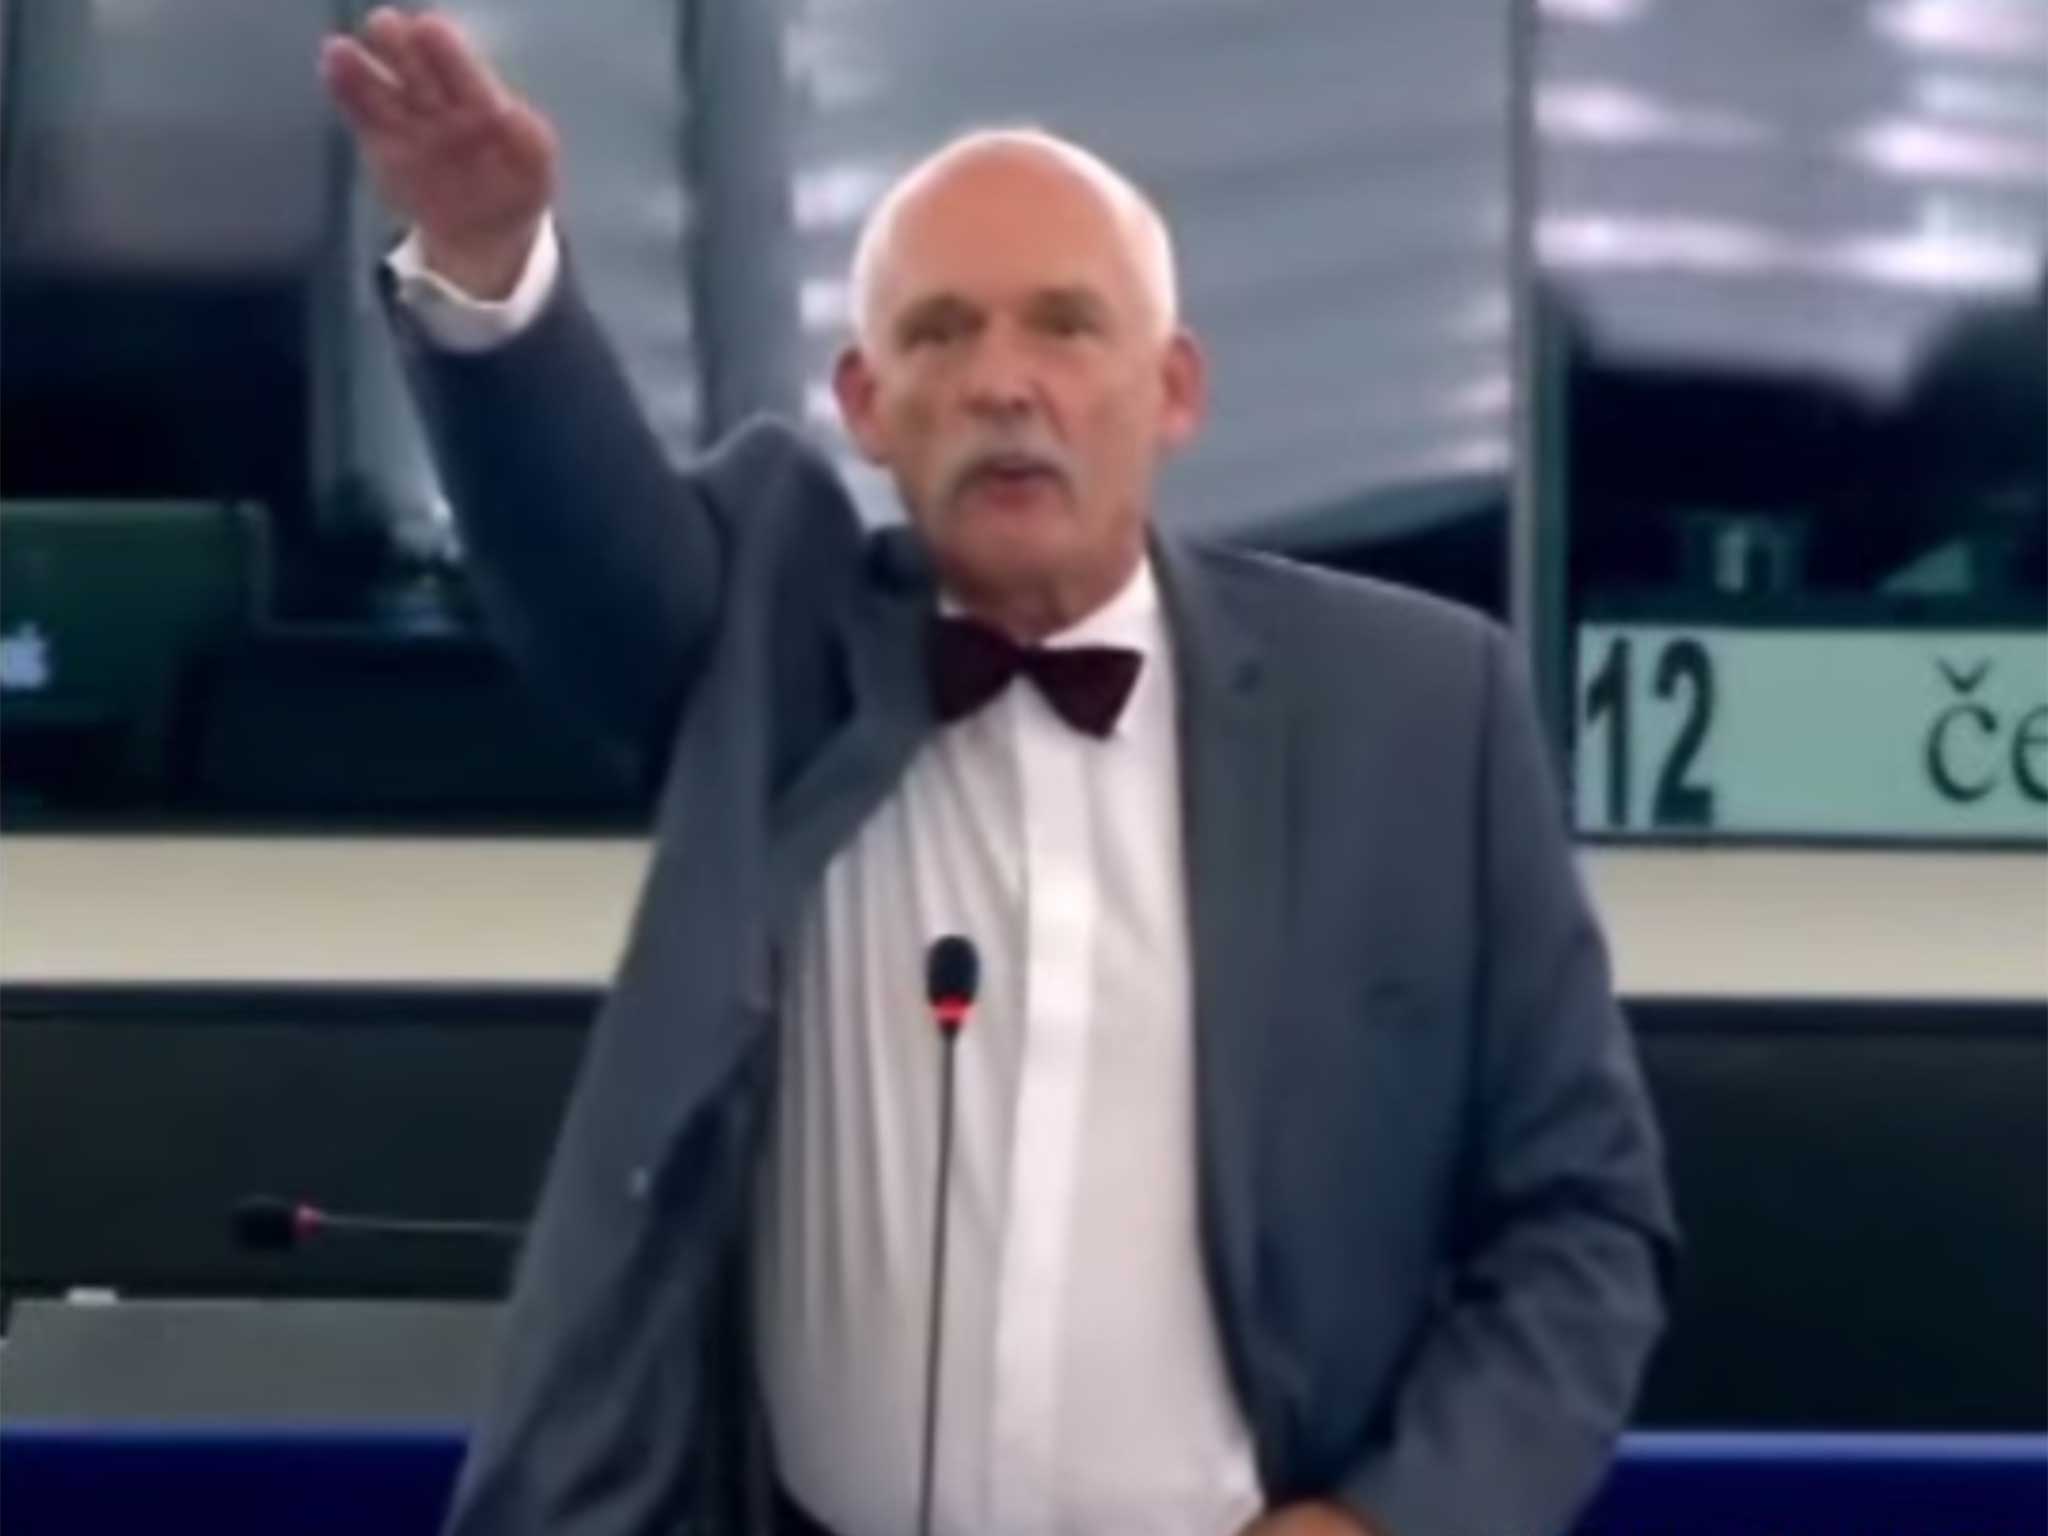 Janusz Korwin-Mikke does not like the EU